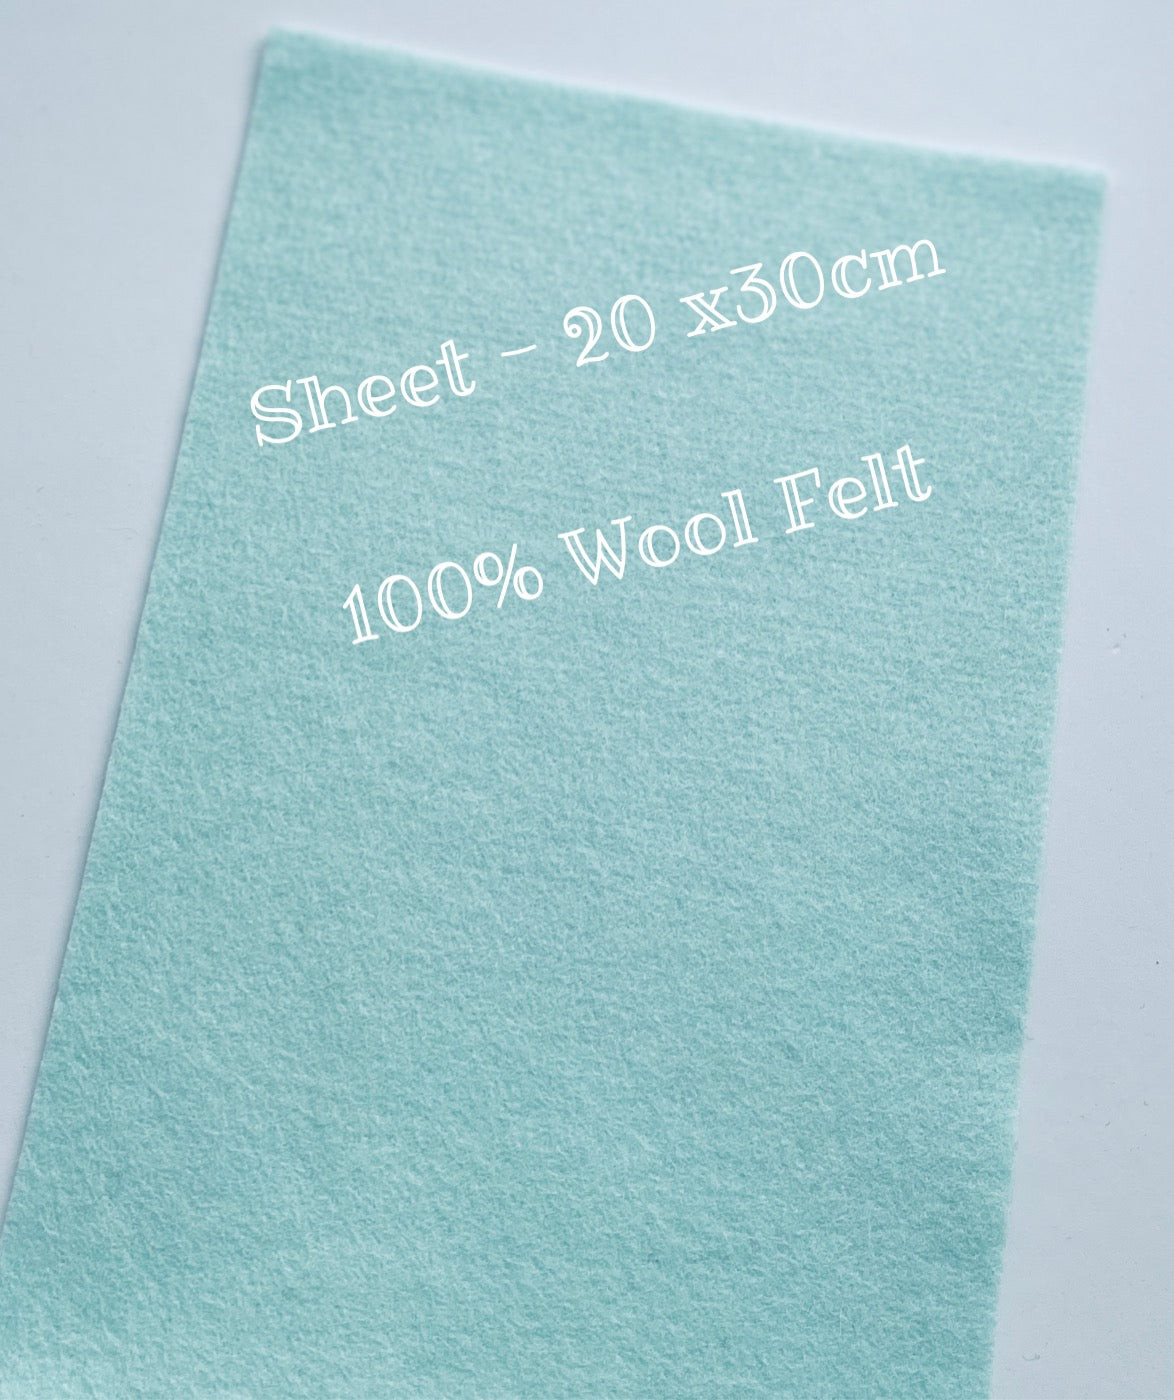 100% Wool Felt - Sheet 20 x 30 – Felt-Better